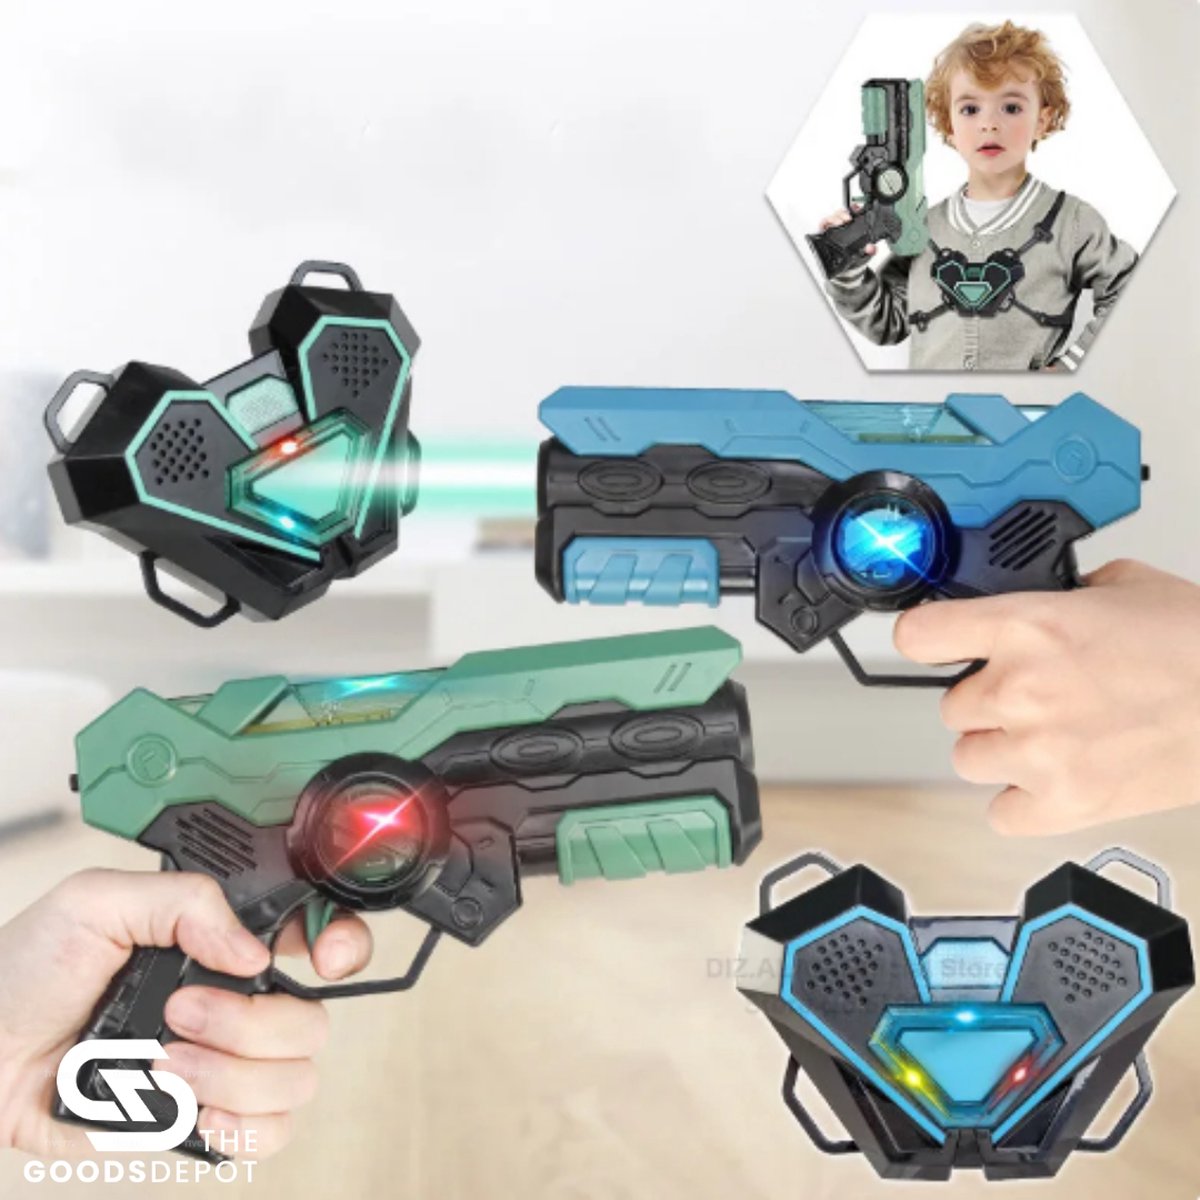 DIZ 2 Laserguns (2 vesten inbegrepen) Unieke trilfunctie Lasergame set voor kinderen Plezier voor iedereen!